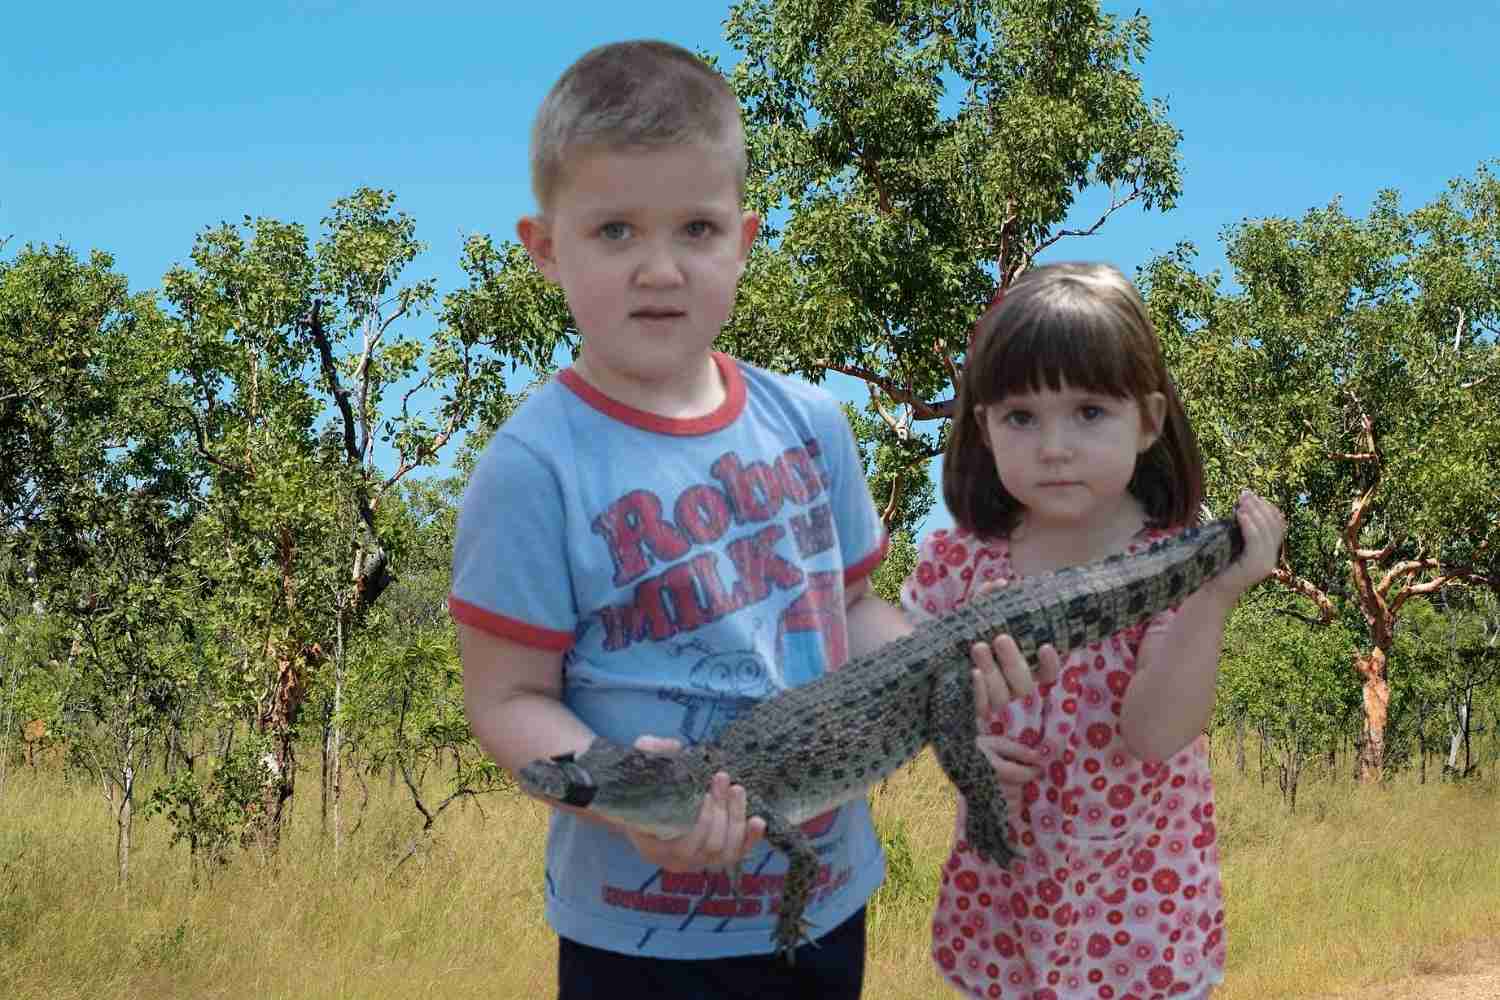 Crocodiles in Darwin | Things to do in Darwin with kids